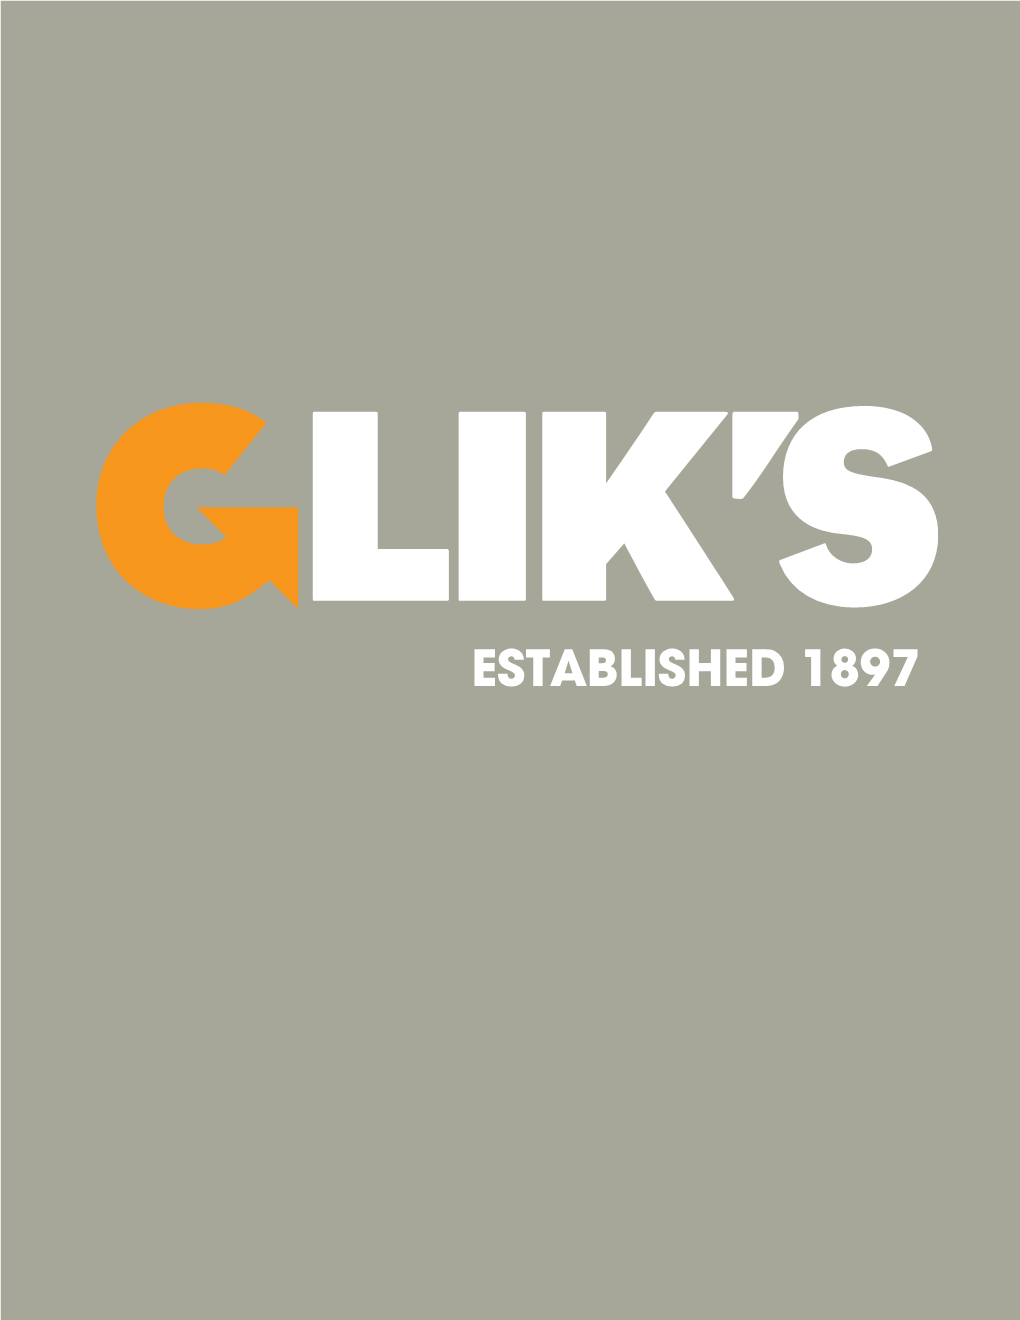 Glikshistorybook2015.Pdf